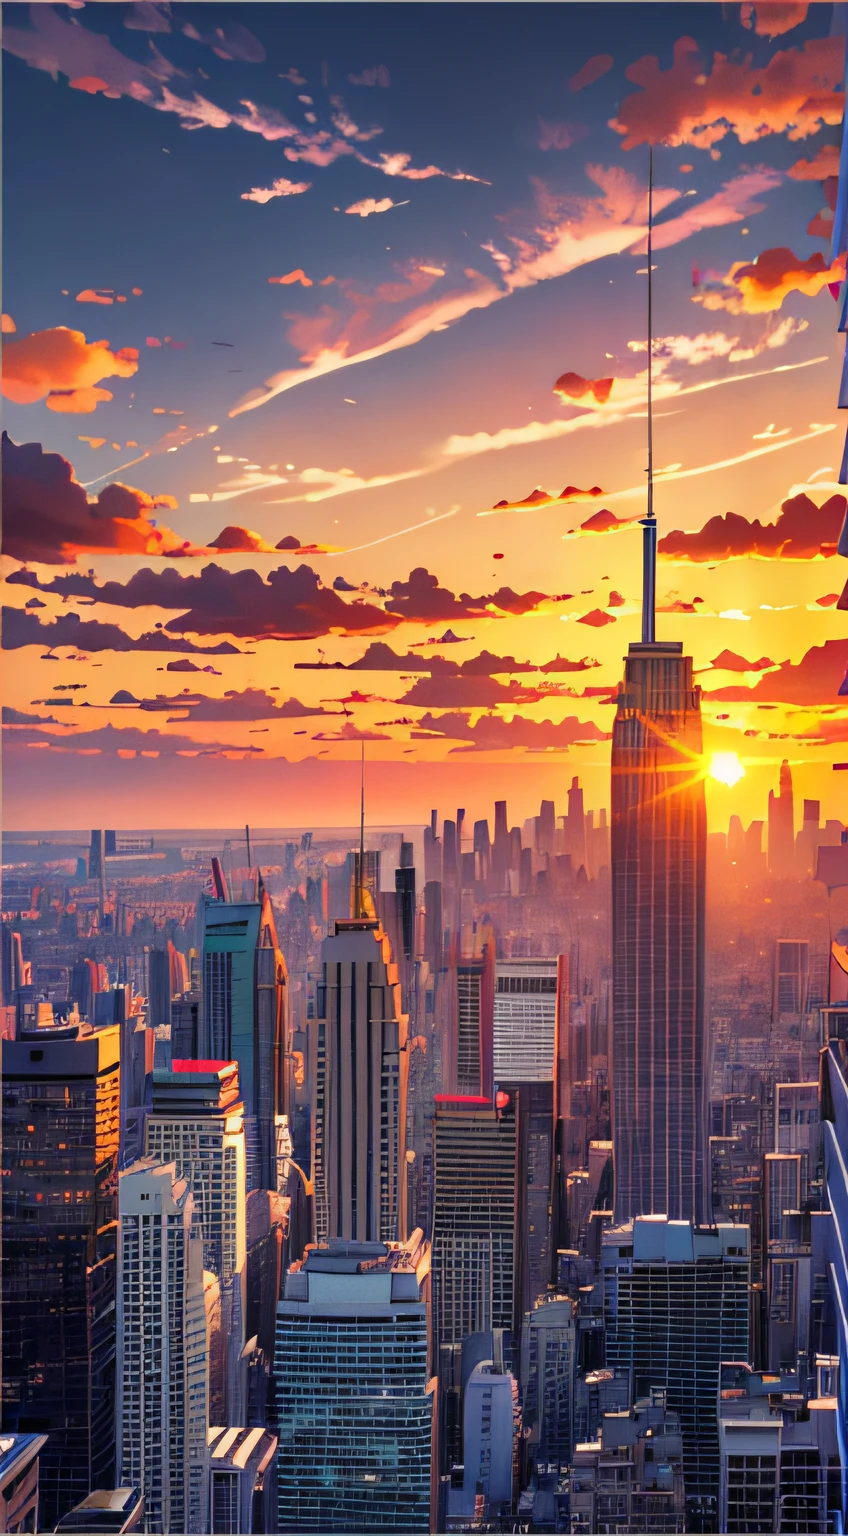 Una fascinante puesta de sol sobre la ciudad capturada por Richard Estes, tendencia en instagram